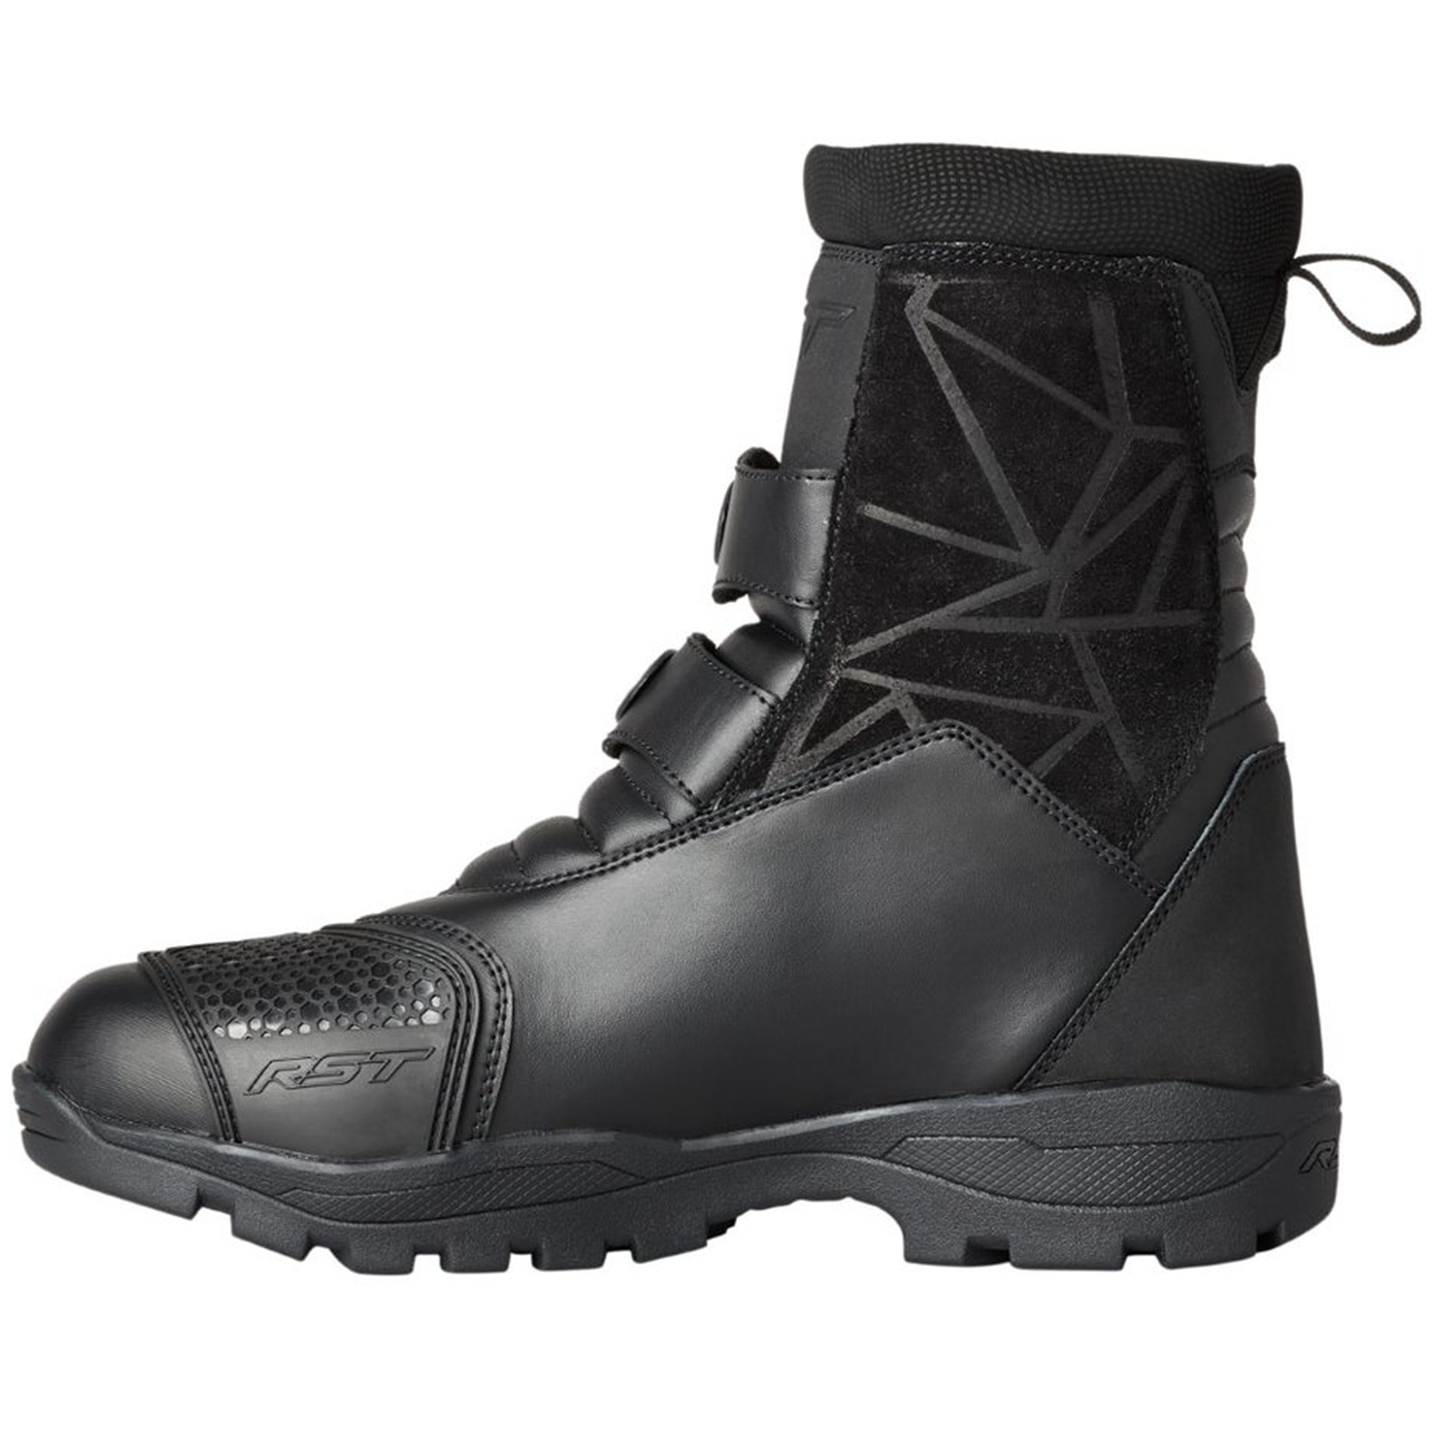 RST Adventure-X Mid (CE) Men's Waterproof Boots